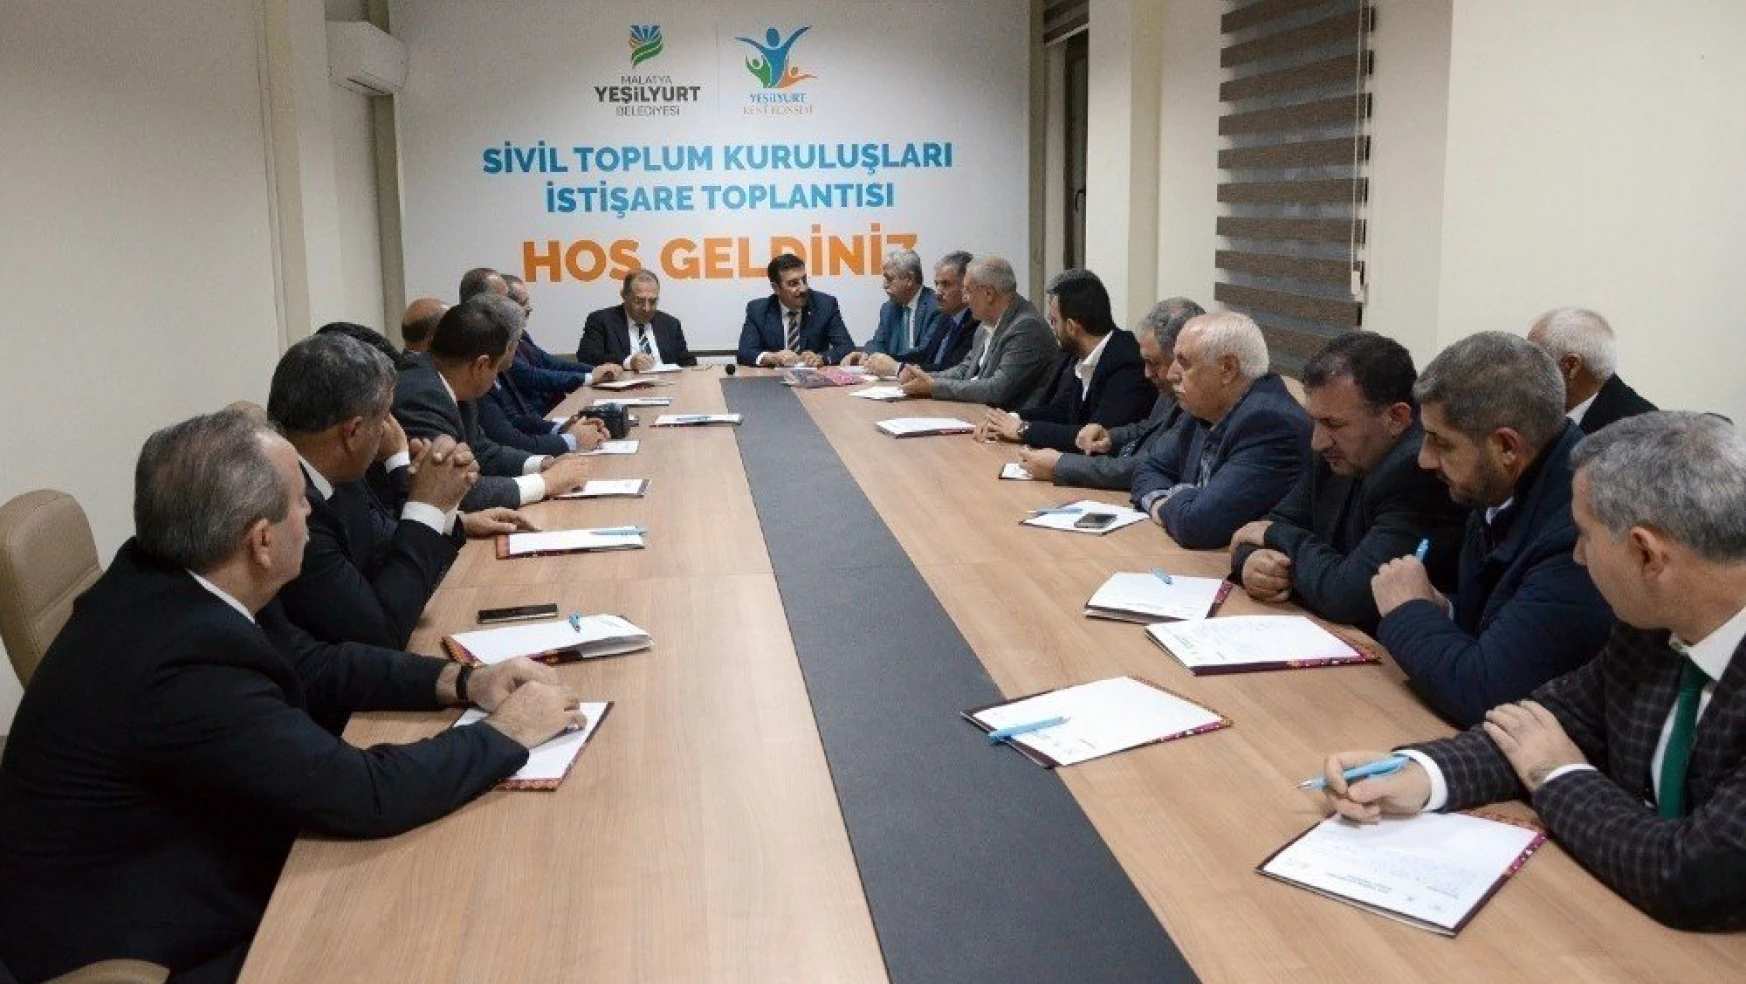 Bakan Tüfenkci: 'STK'larla bir araya gelip görüş alışverişinde bulunmaya önem veriyoruz'
